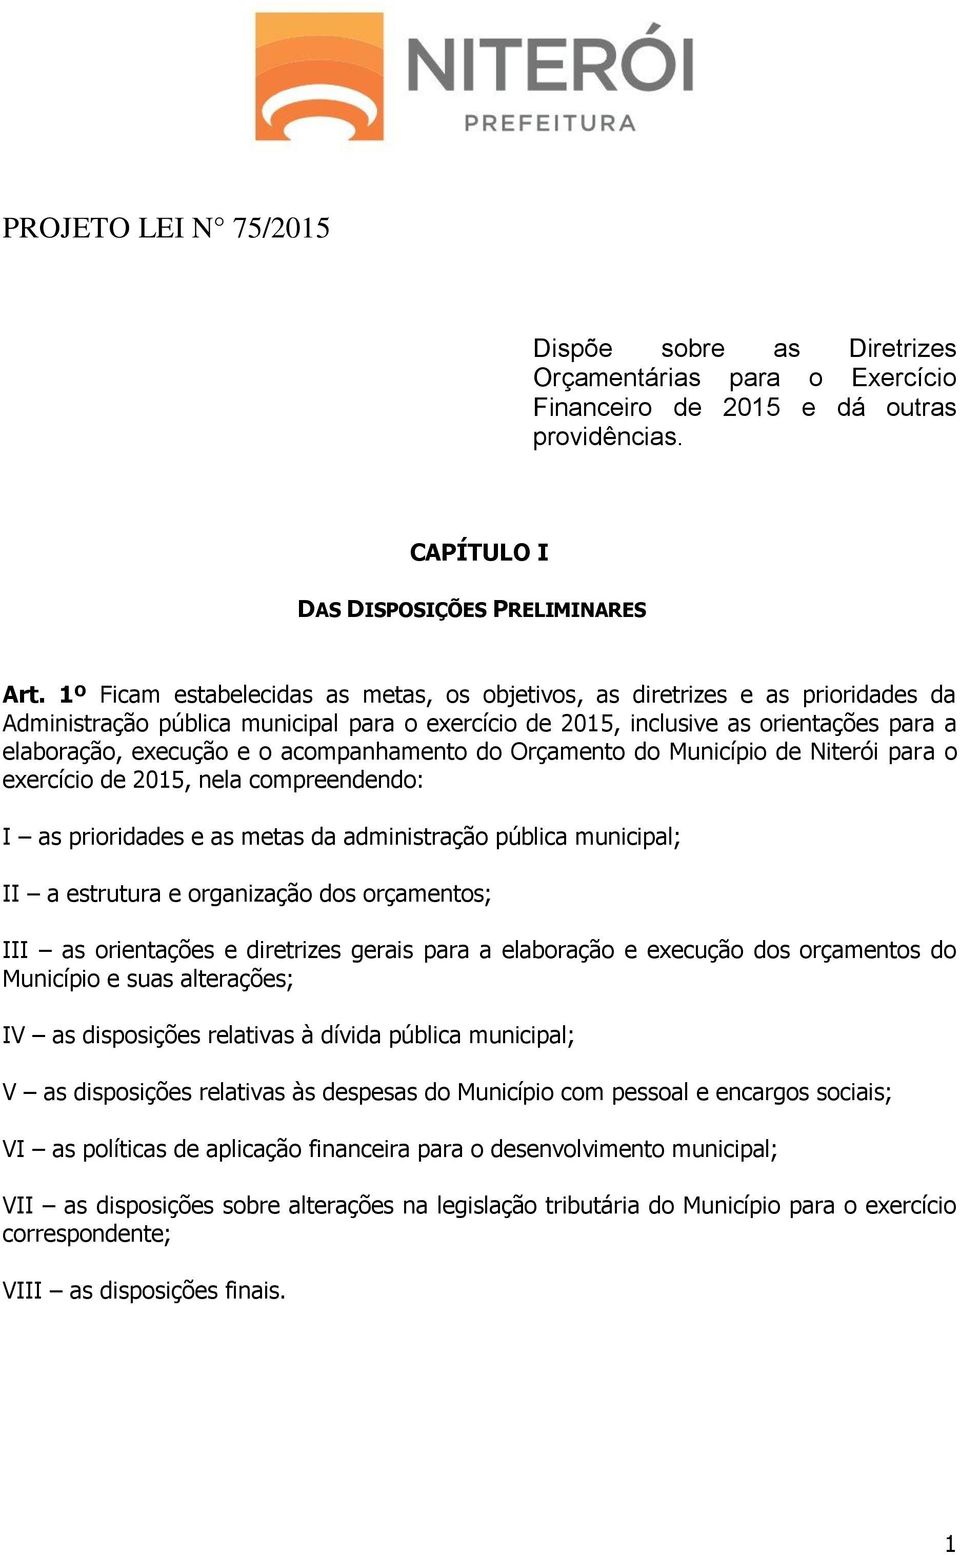 acompanhamento do Orçamento do Município de Niterói para o exercício de 2015, nela compreendendo: I as prioridades e as metas da administração pública municipal; II a estrutura e organização dos